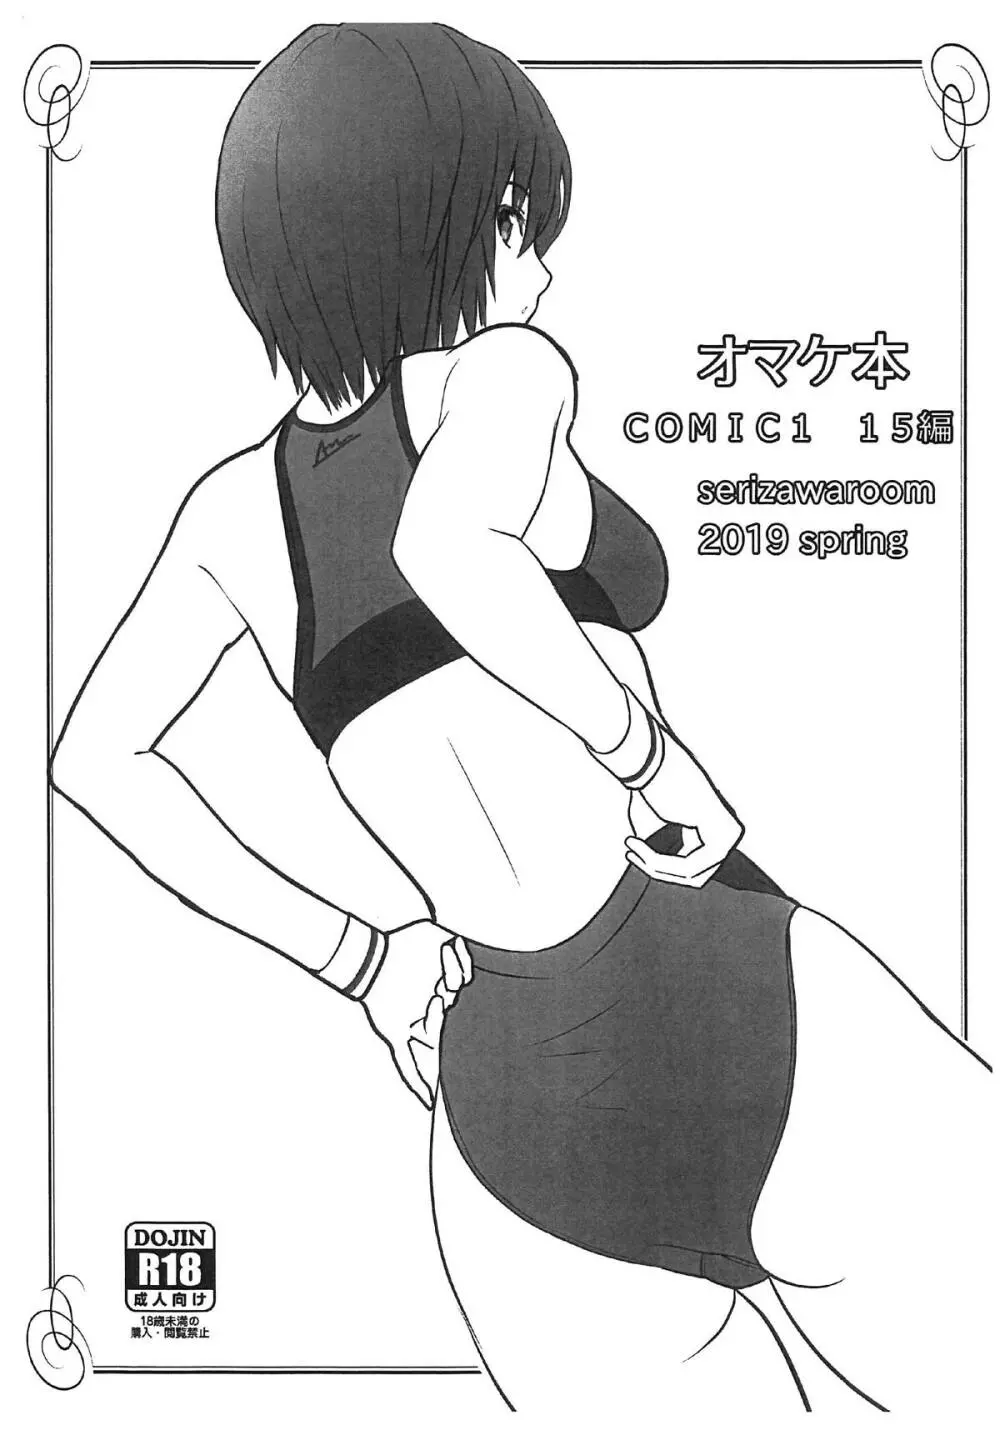 オマケ本 COMIC1 15編 1ページ